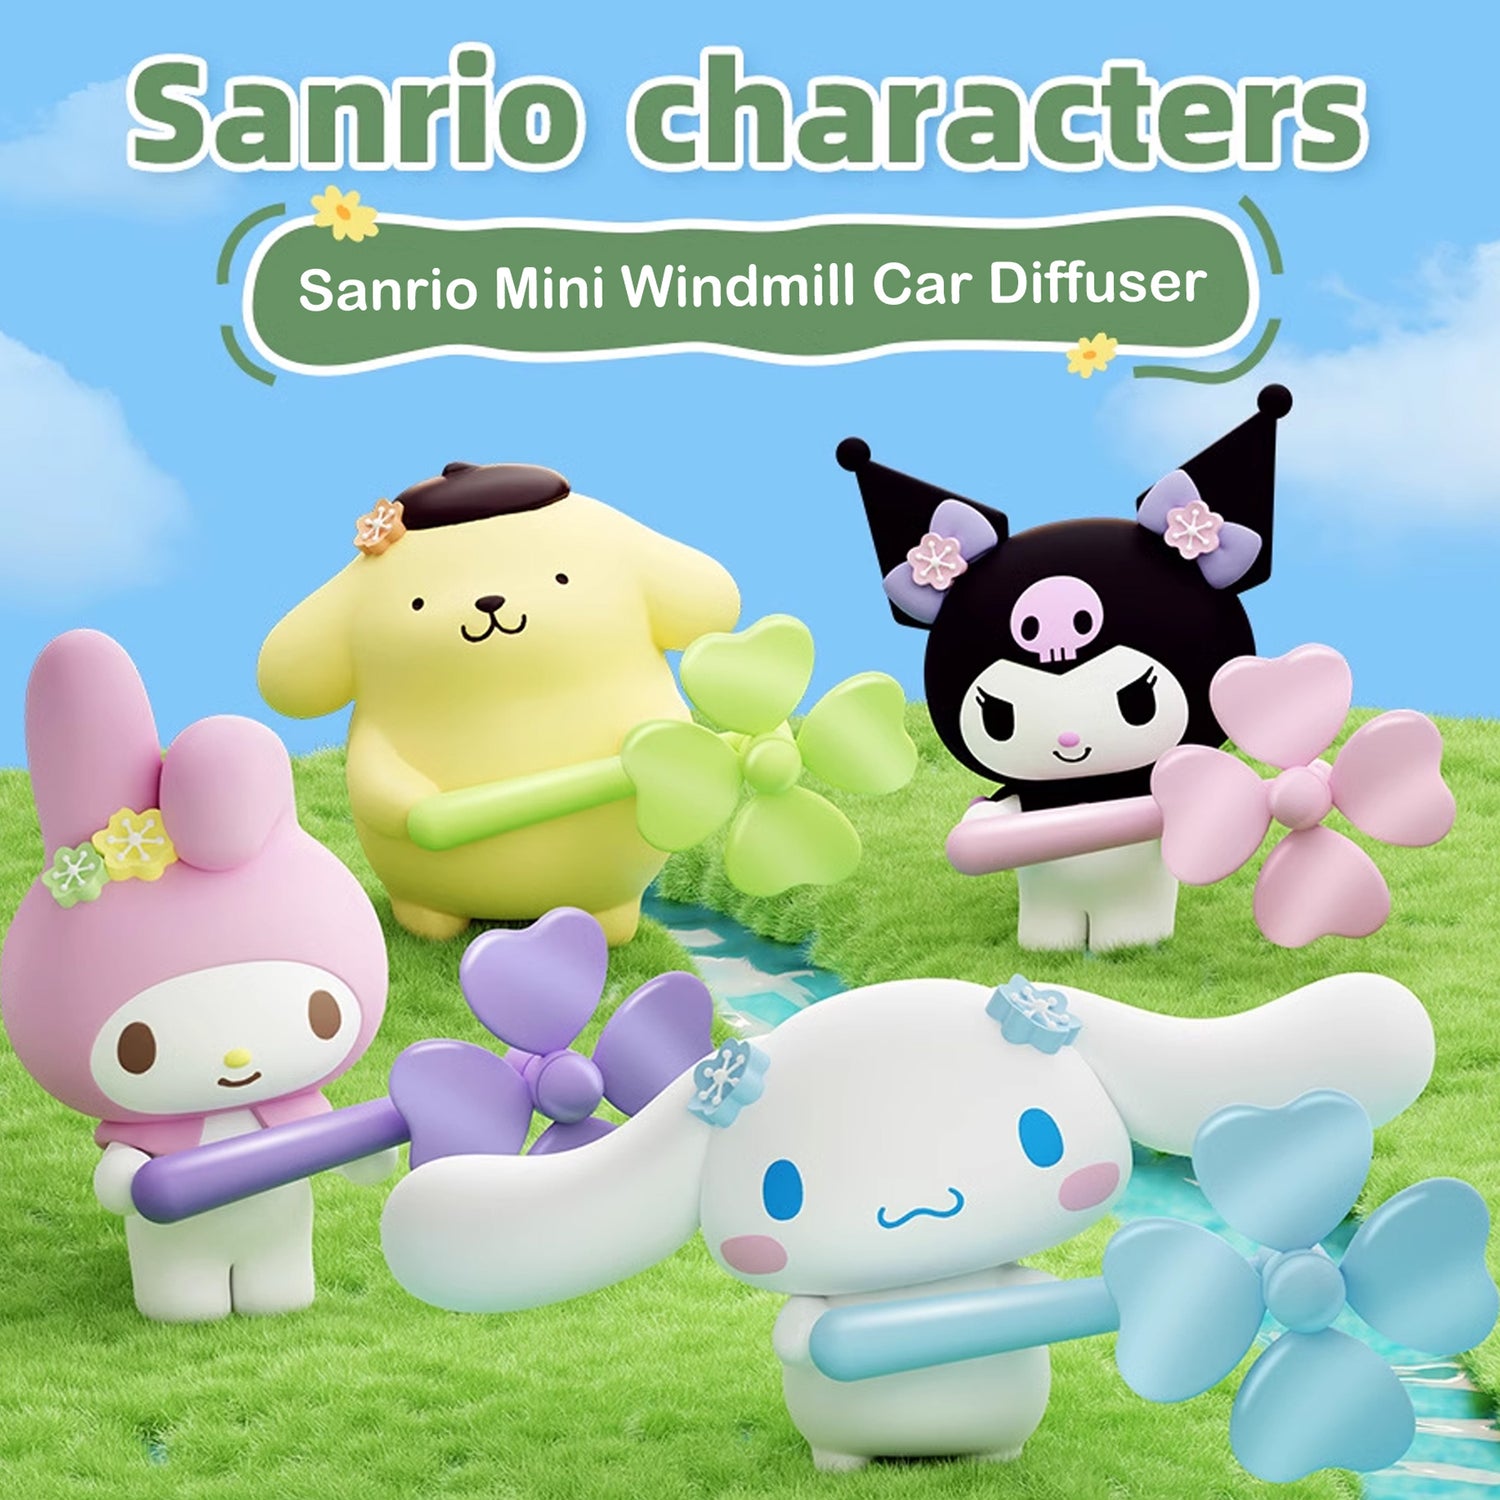 Sanrio Mini Windmill Car Diffuser